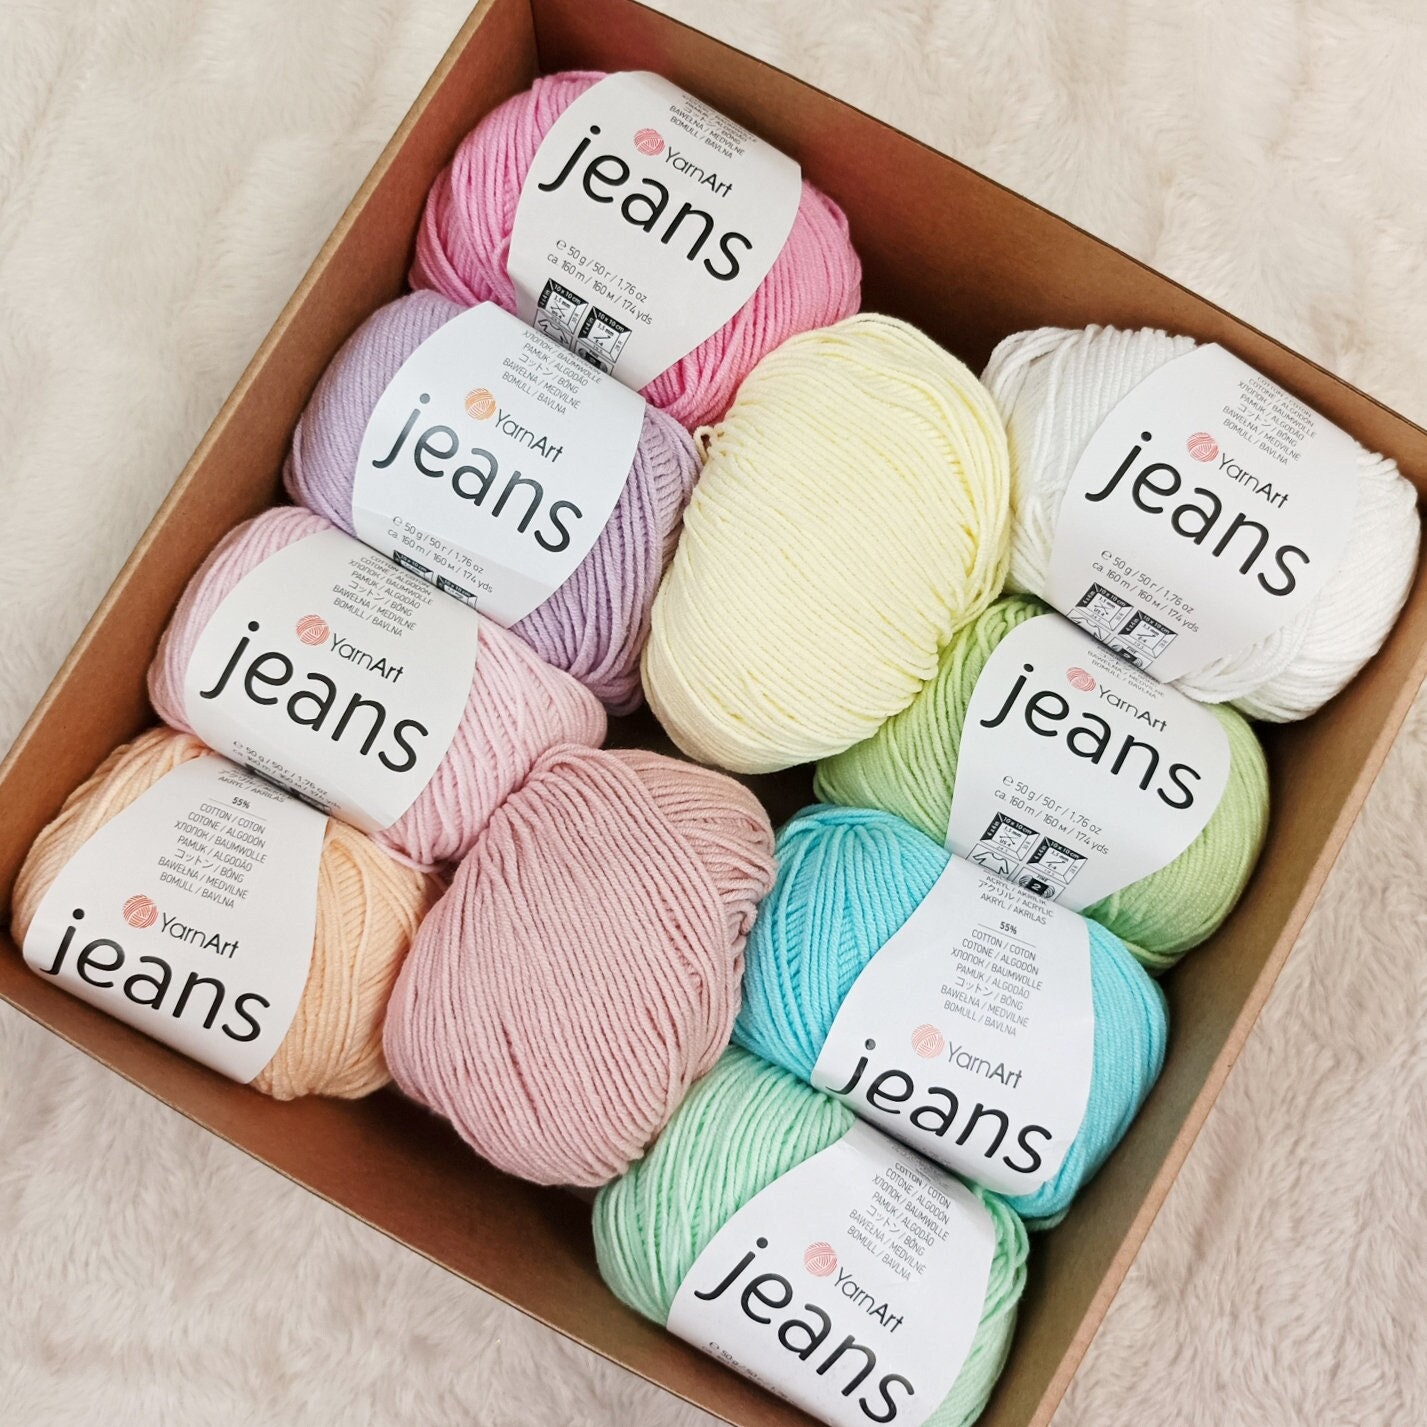 Yarn Art 5 Ball (Skeins) YarnArt Jeans Yarn, 55% cotton 45